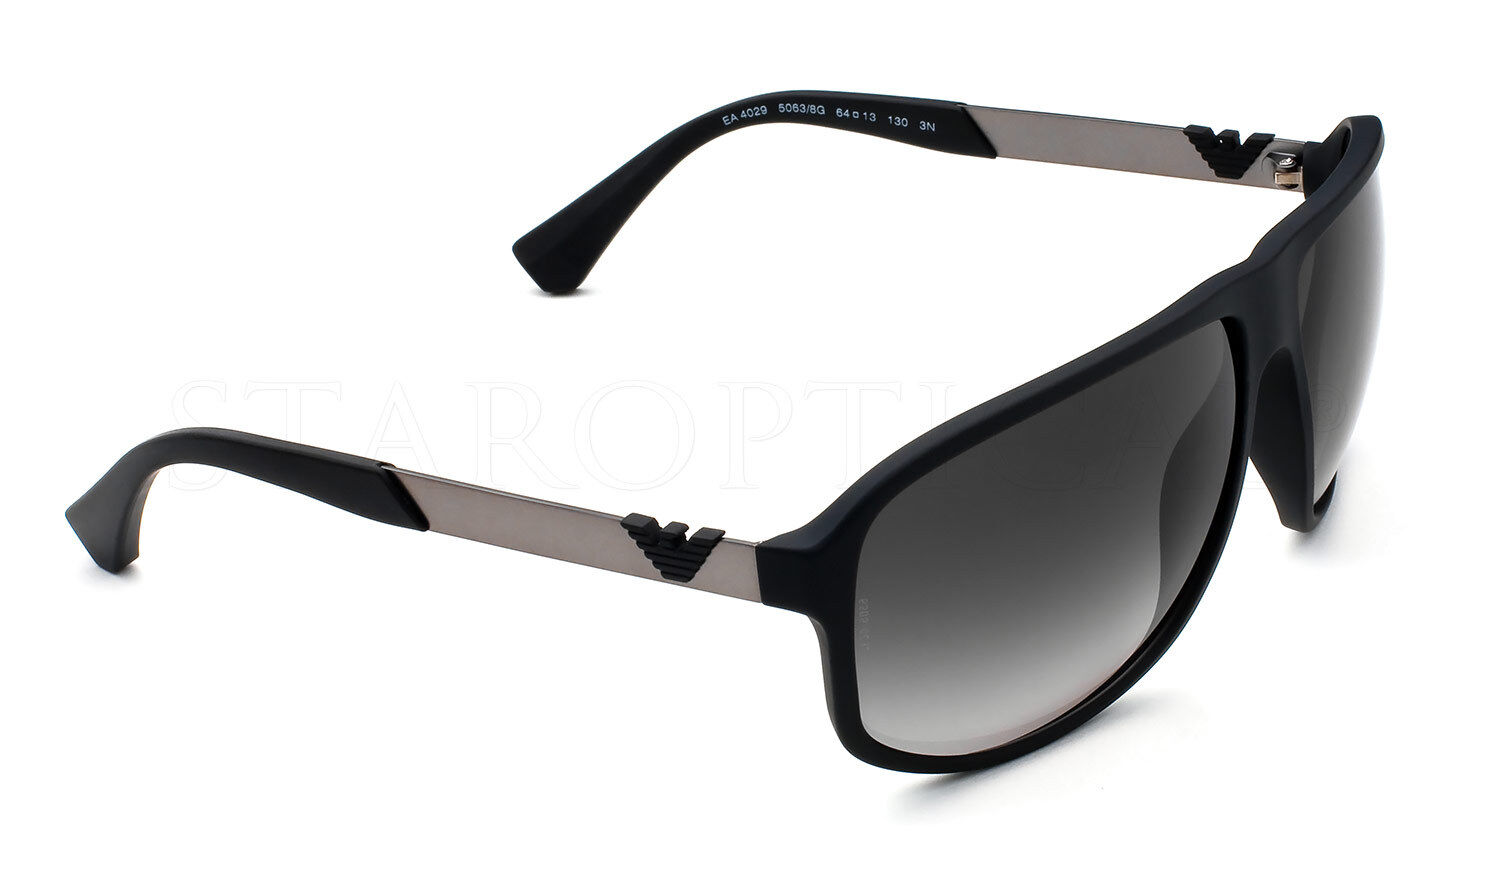 Emporio Armani Sunglasses EA 4029 5063/8G Black Rubber/Grey Gradient 64mm 50638G Emporio Armani EA4029 - фотография #4